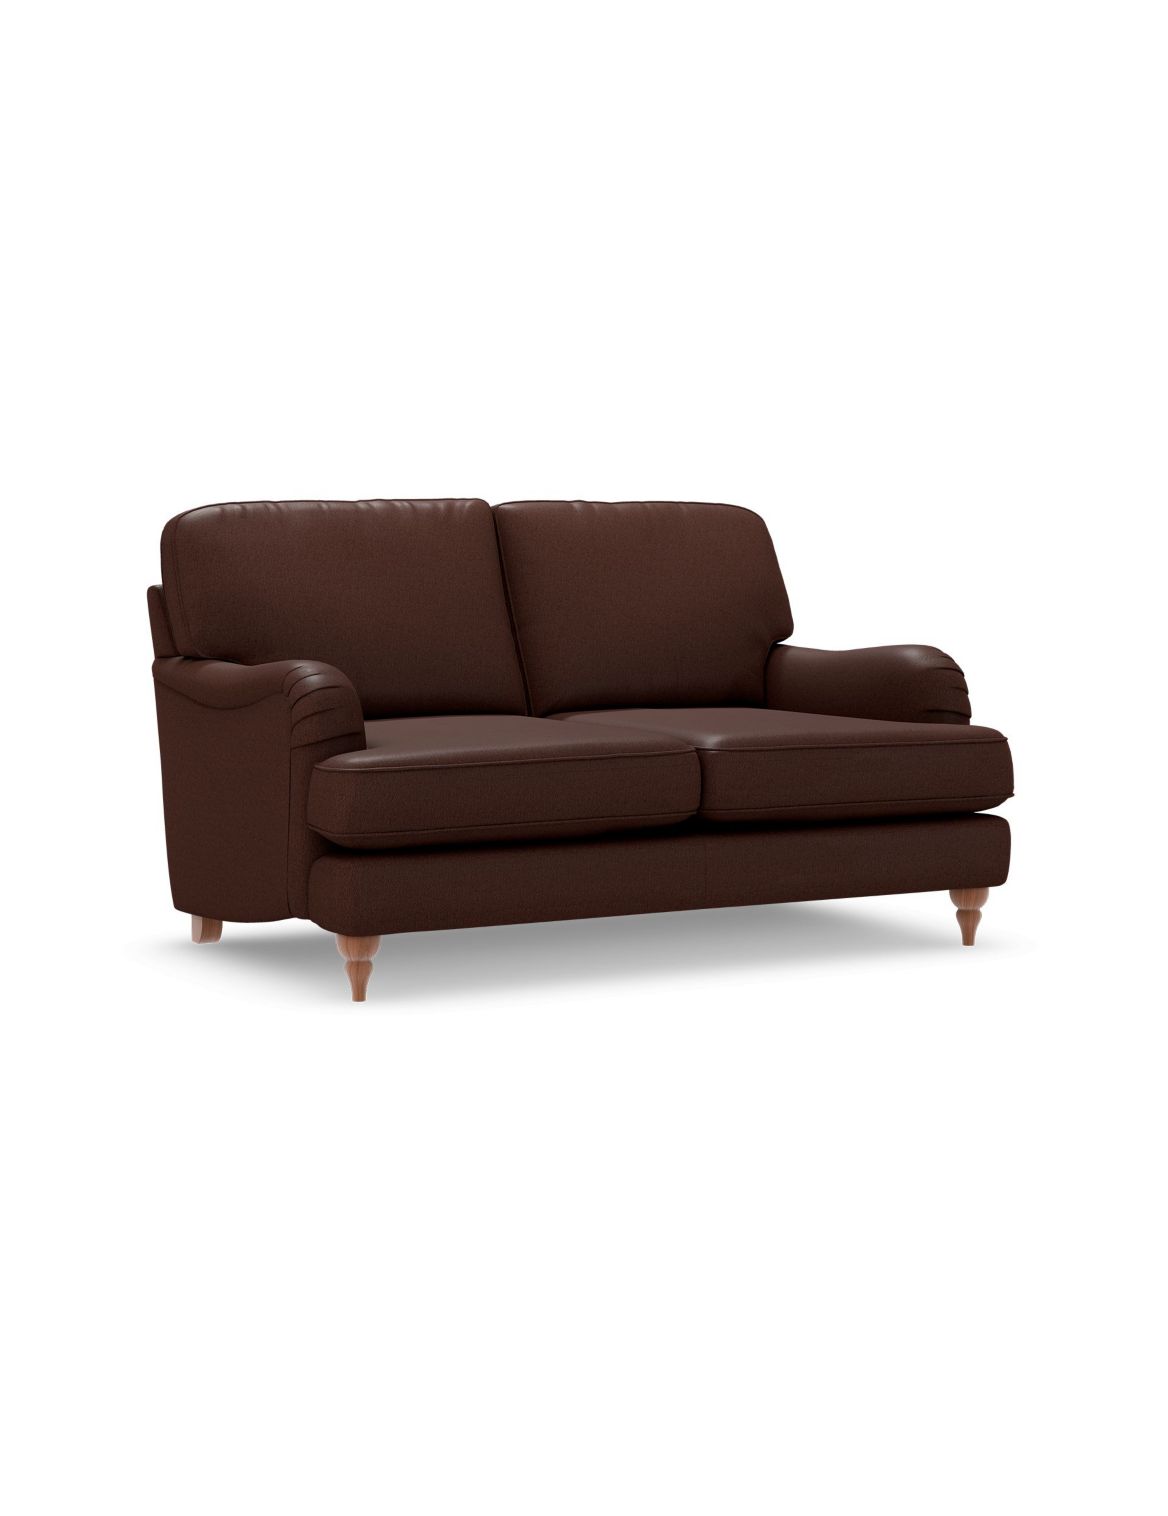 Rochester Small Sofa brown